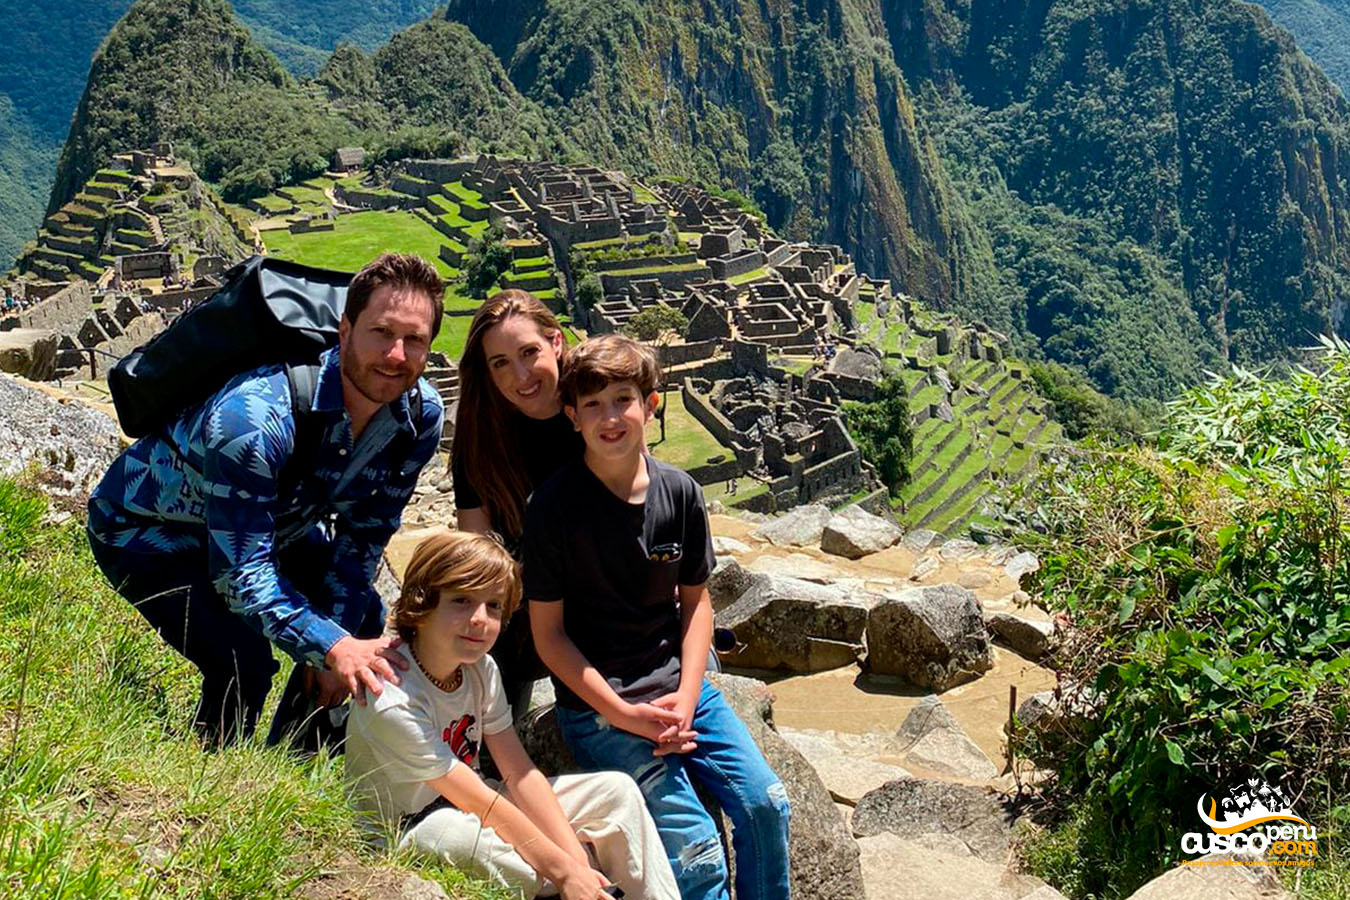 Familia en Machu Picchu. Fuente: CuscoPeru.com